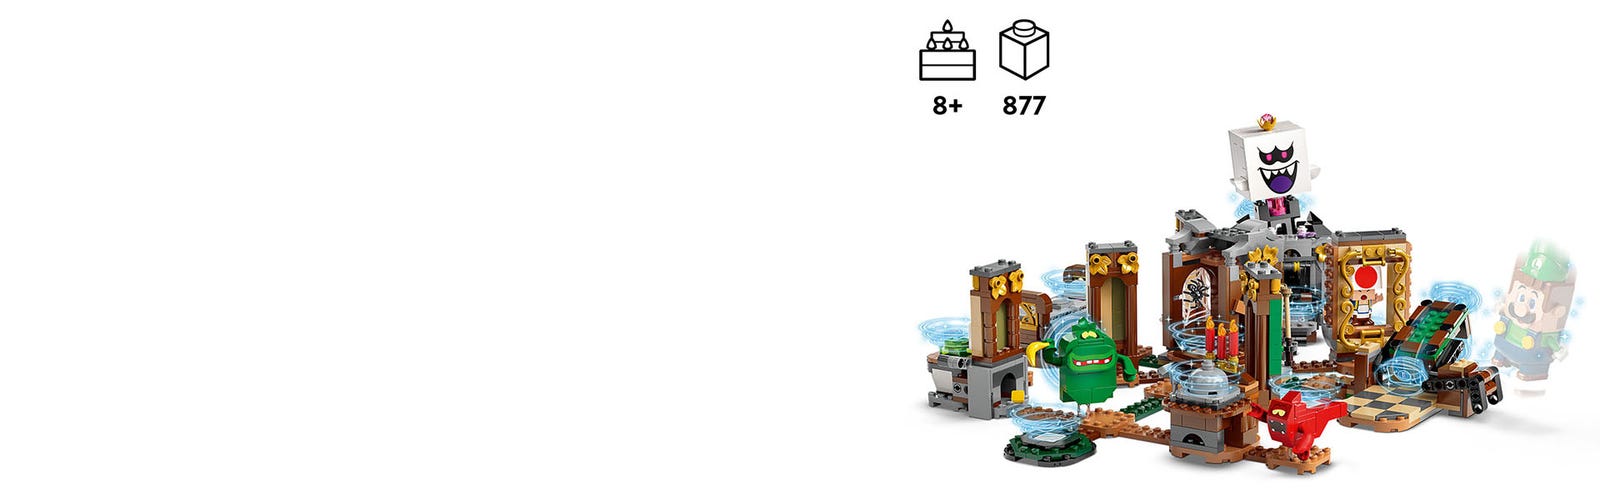 LEGO Super Mario Luigi's Mansion Haunt And Seek Set 71401 - FW21 - US